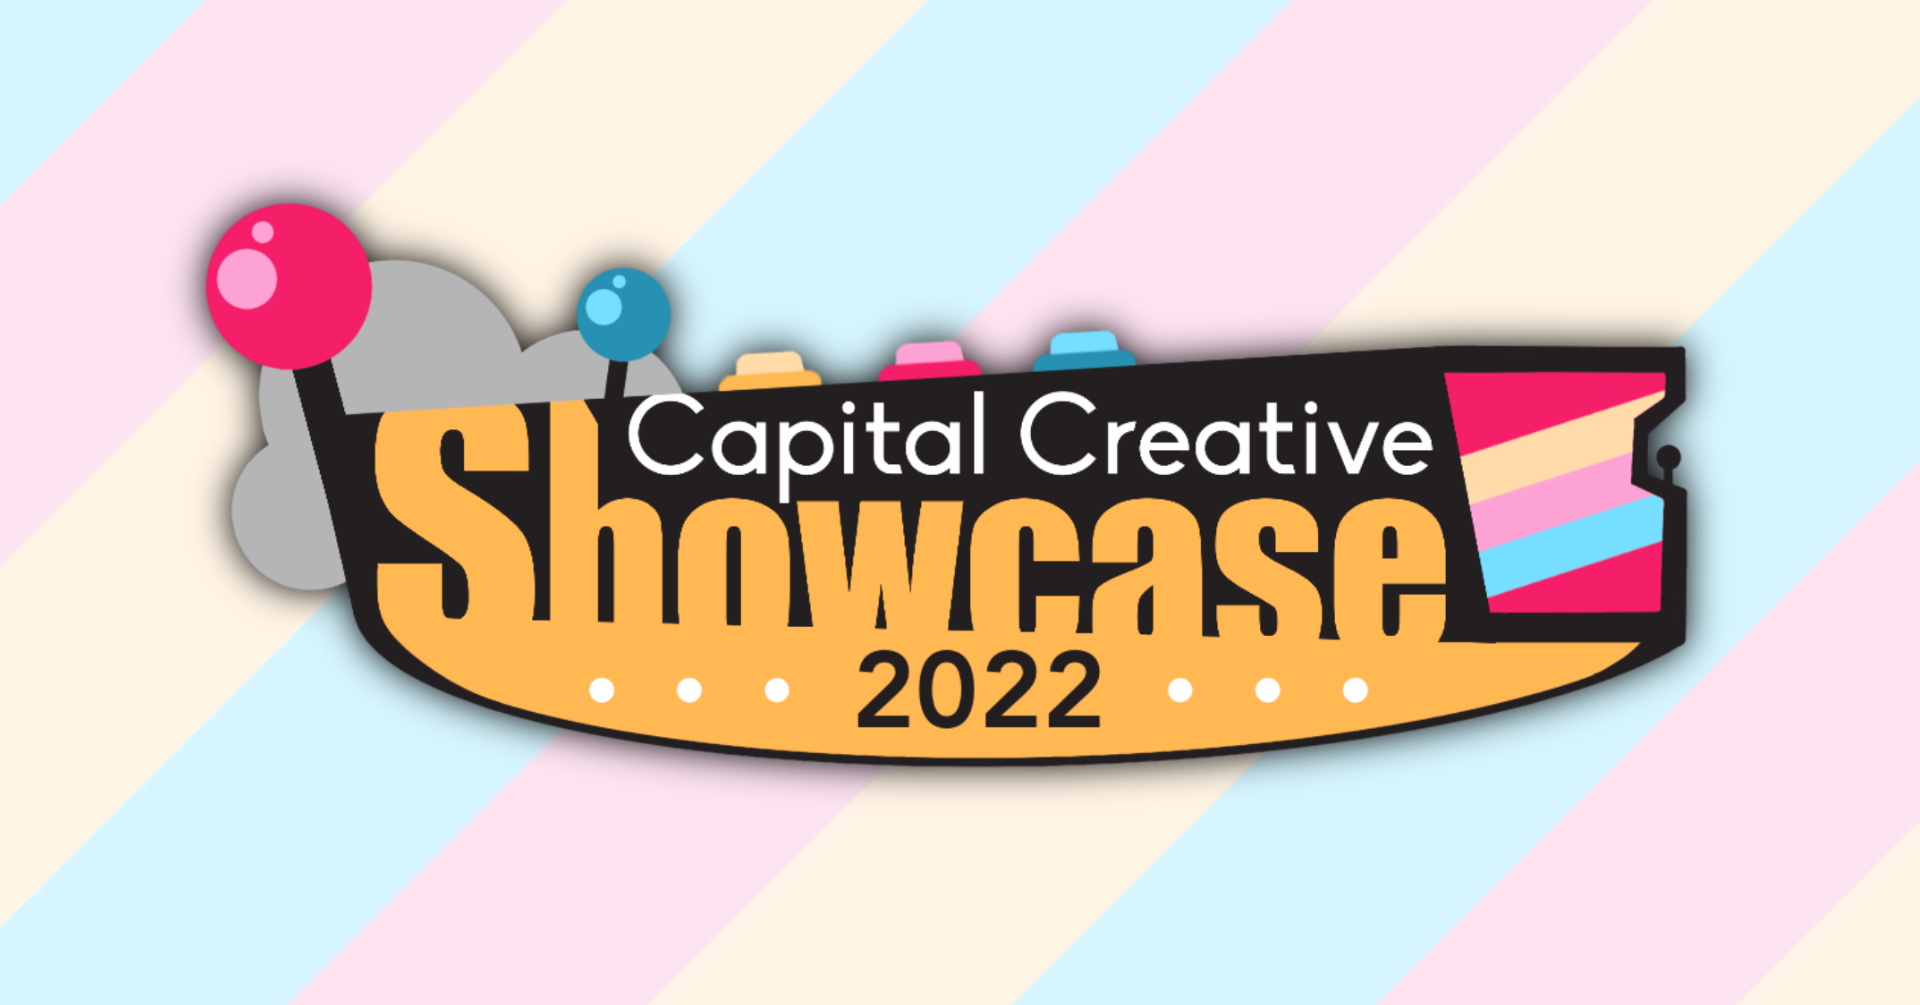 Capital Creative Showcase returns to West Sacramento Community Center